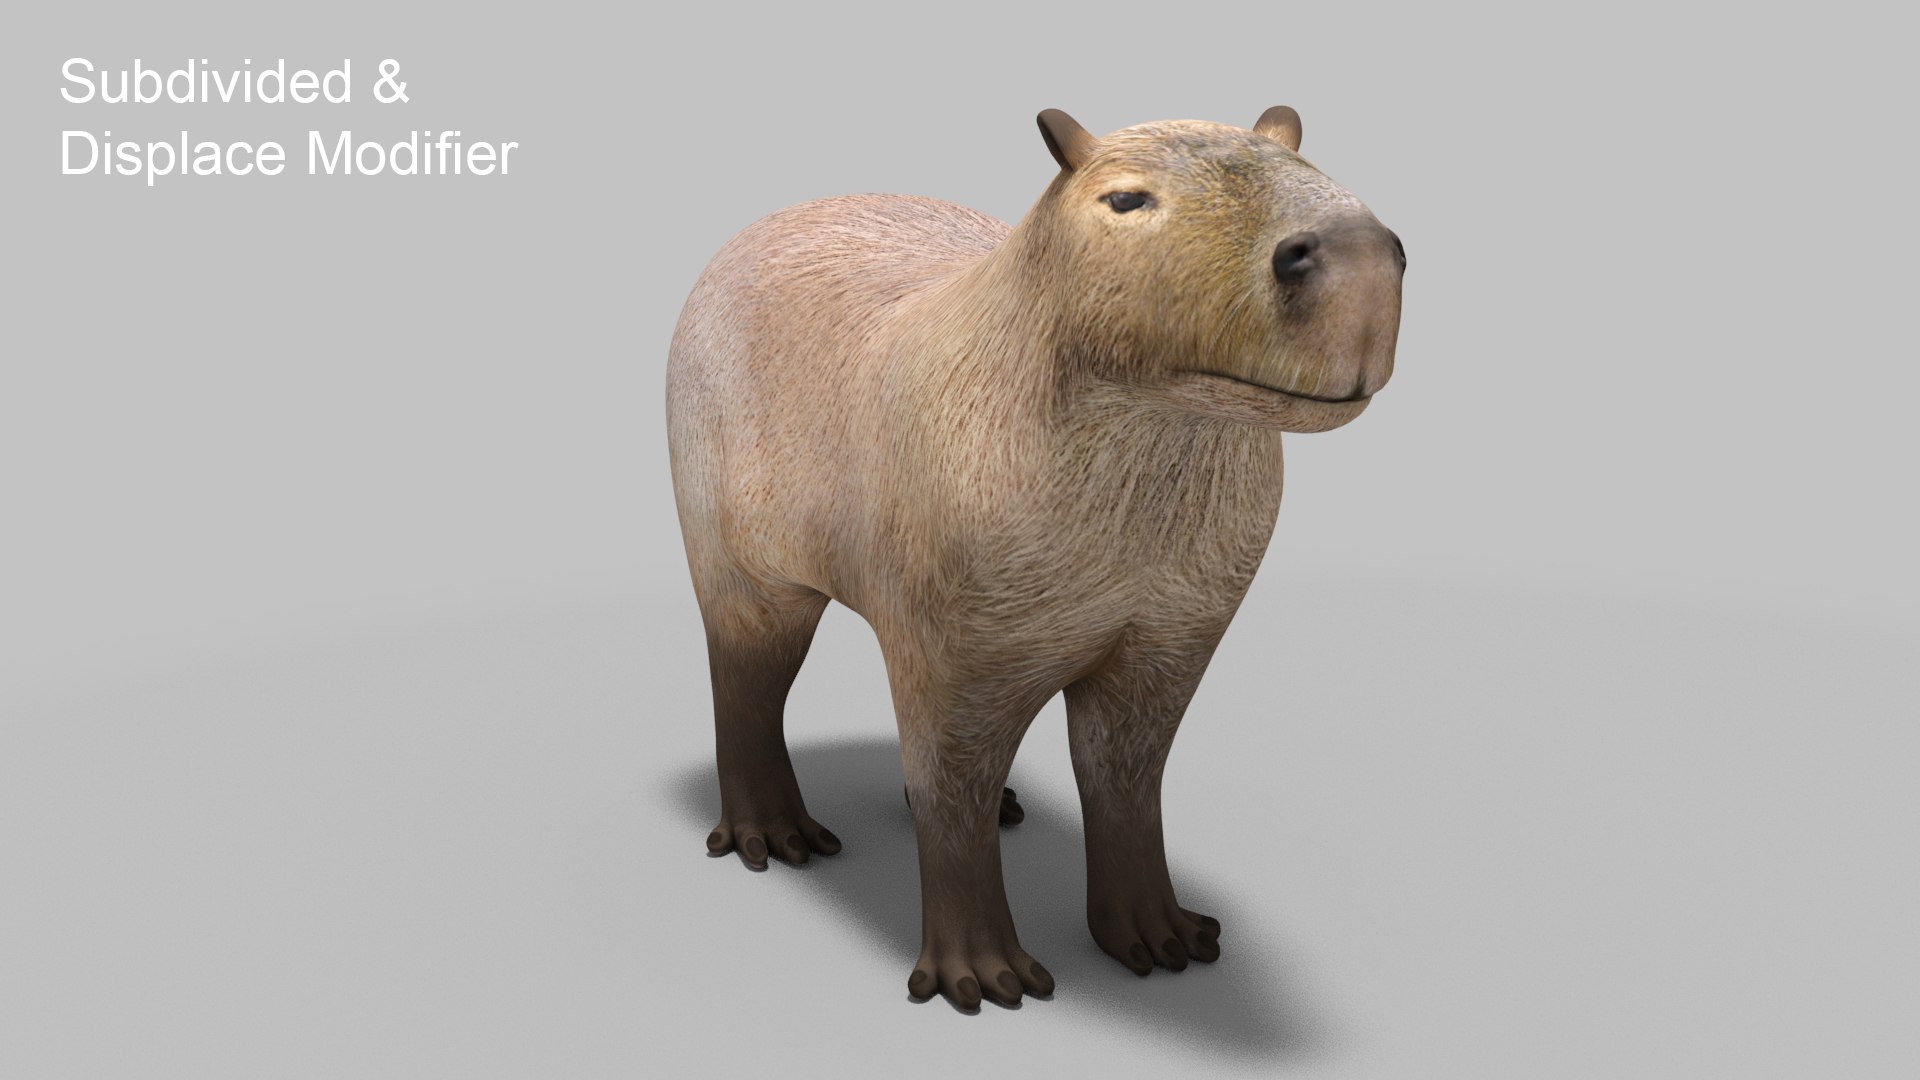 The Capybara P